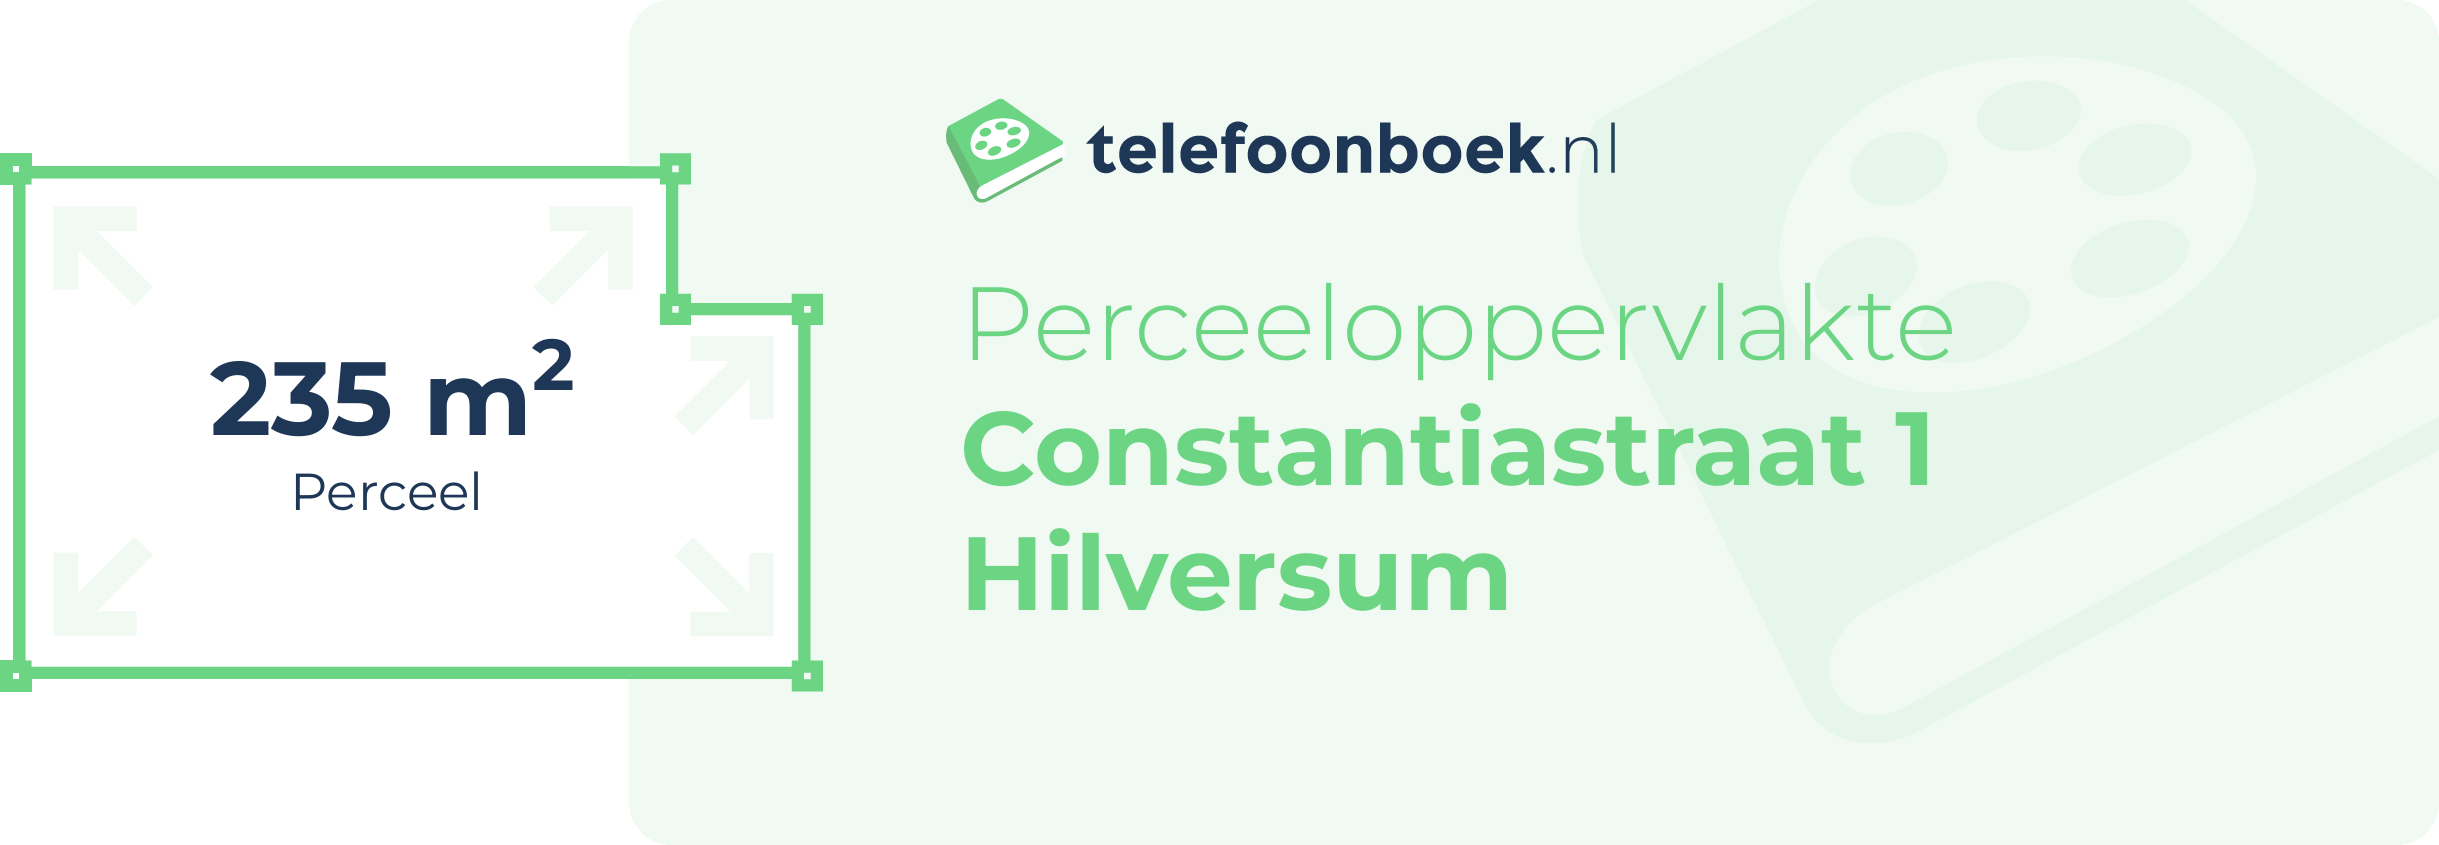 Perceeloppervlakte Constantiastraat 1 Hilversum